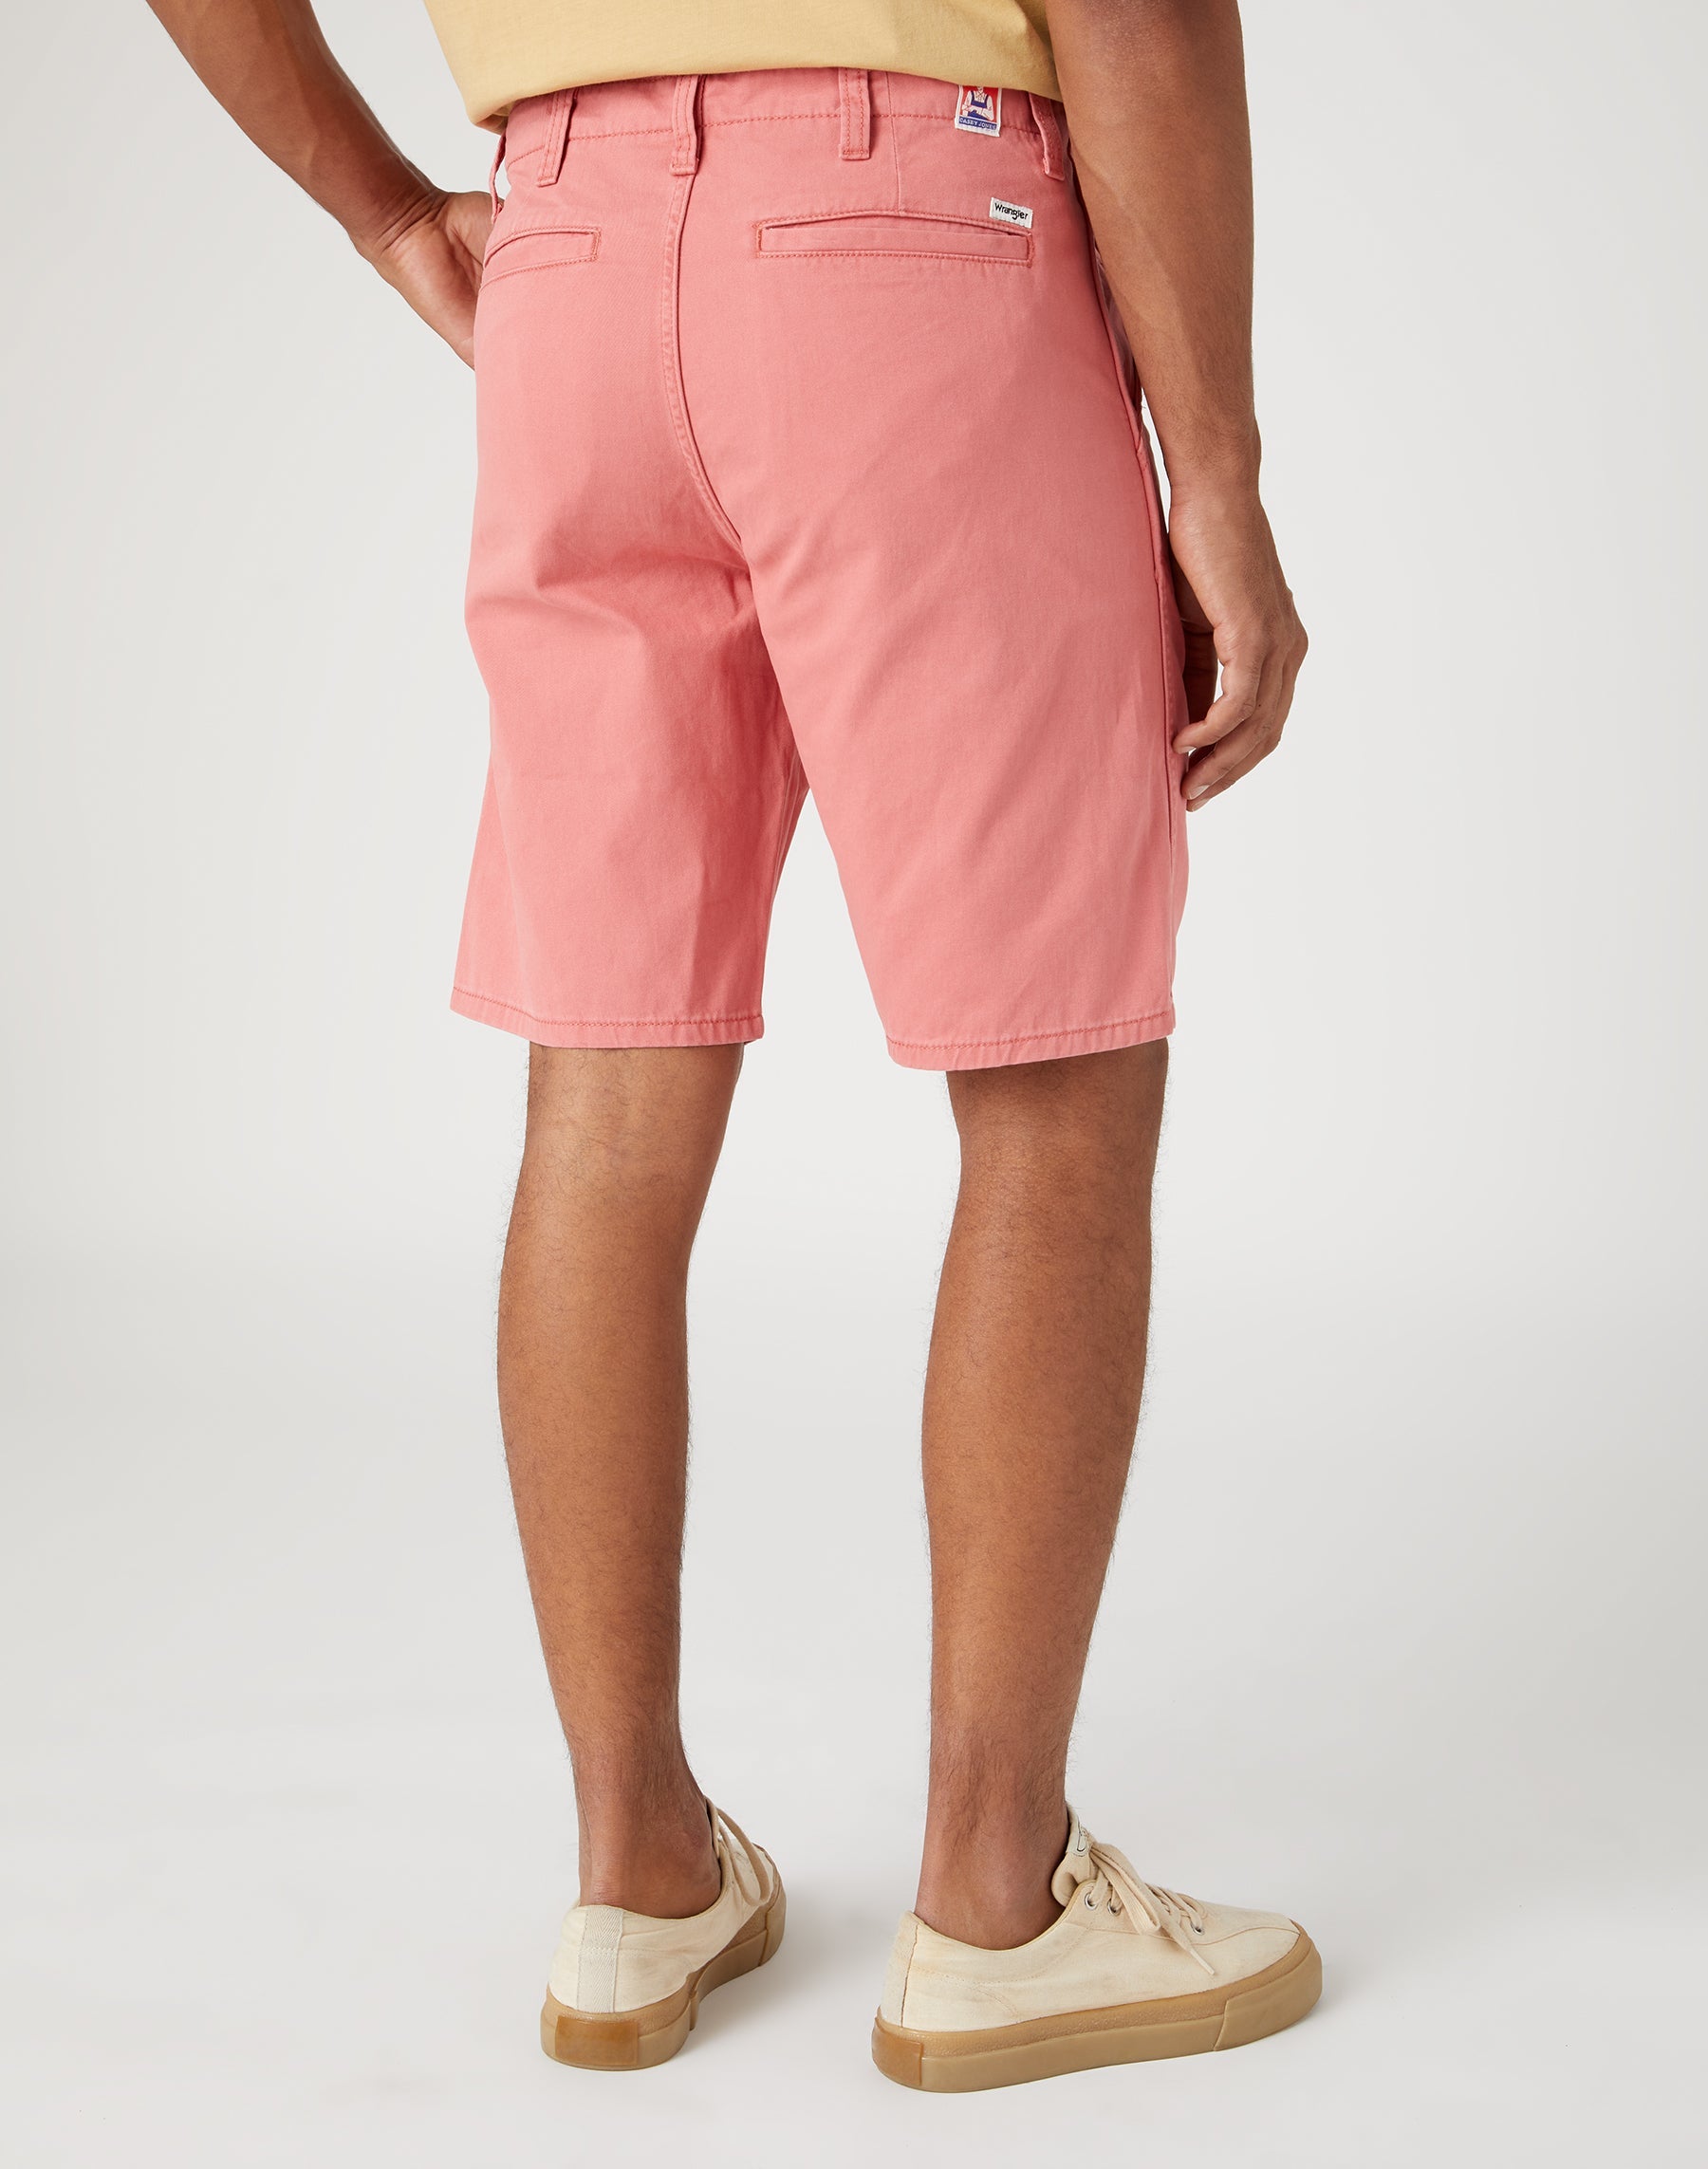 Casey Jones Chino Shorts in Faded Rose Shorts Wrangler   